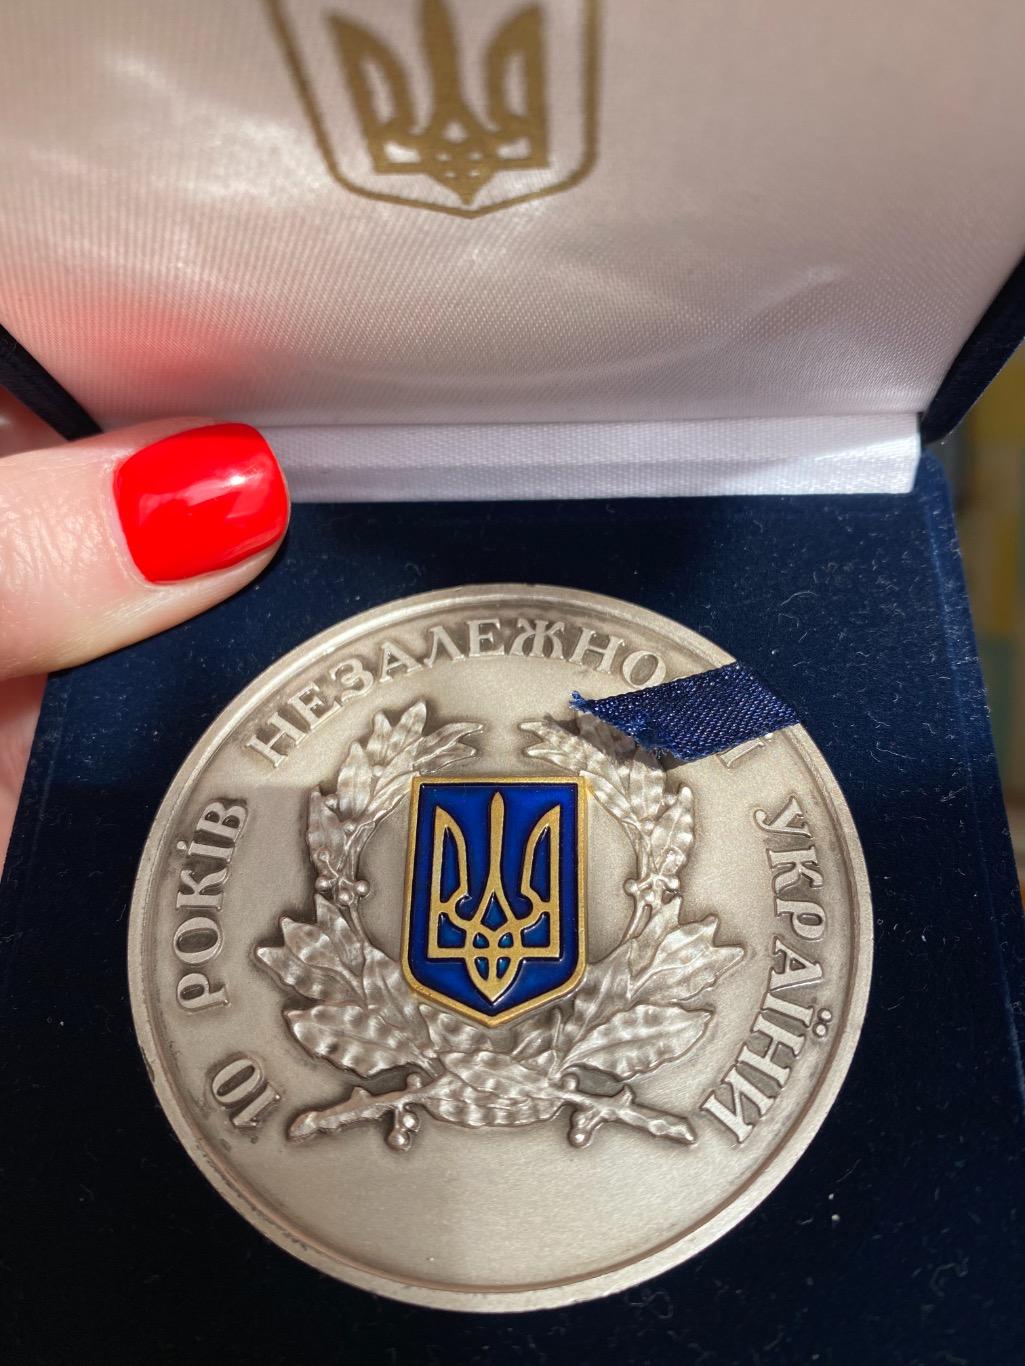 Юбилейная медаль «10 лет независимости Украины» — государственная награда